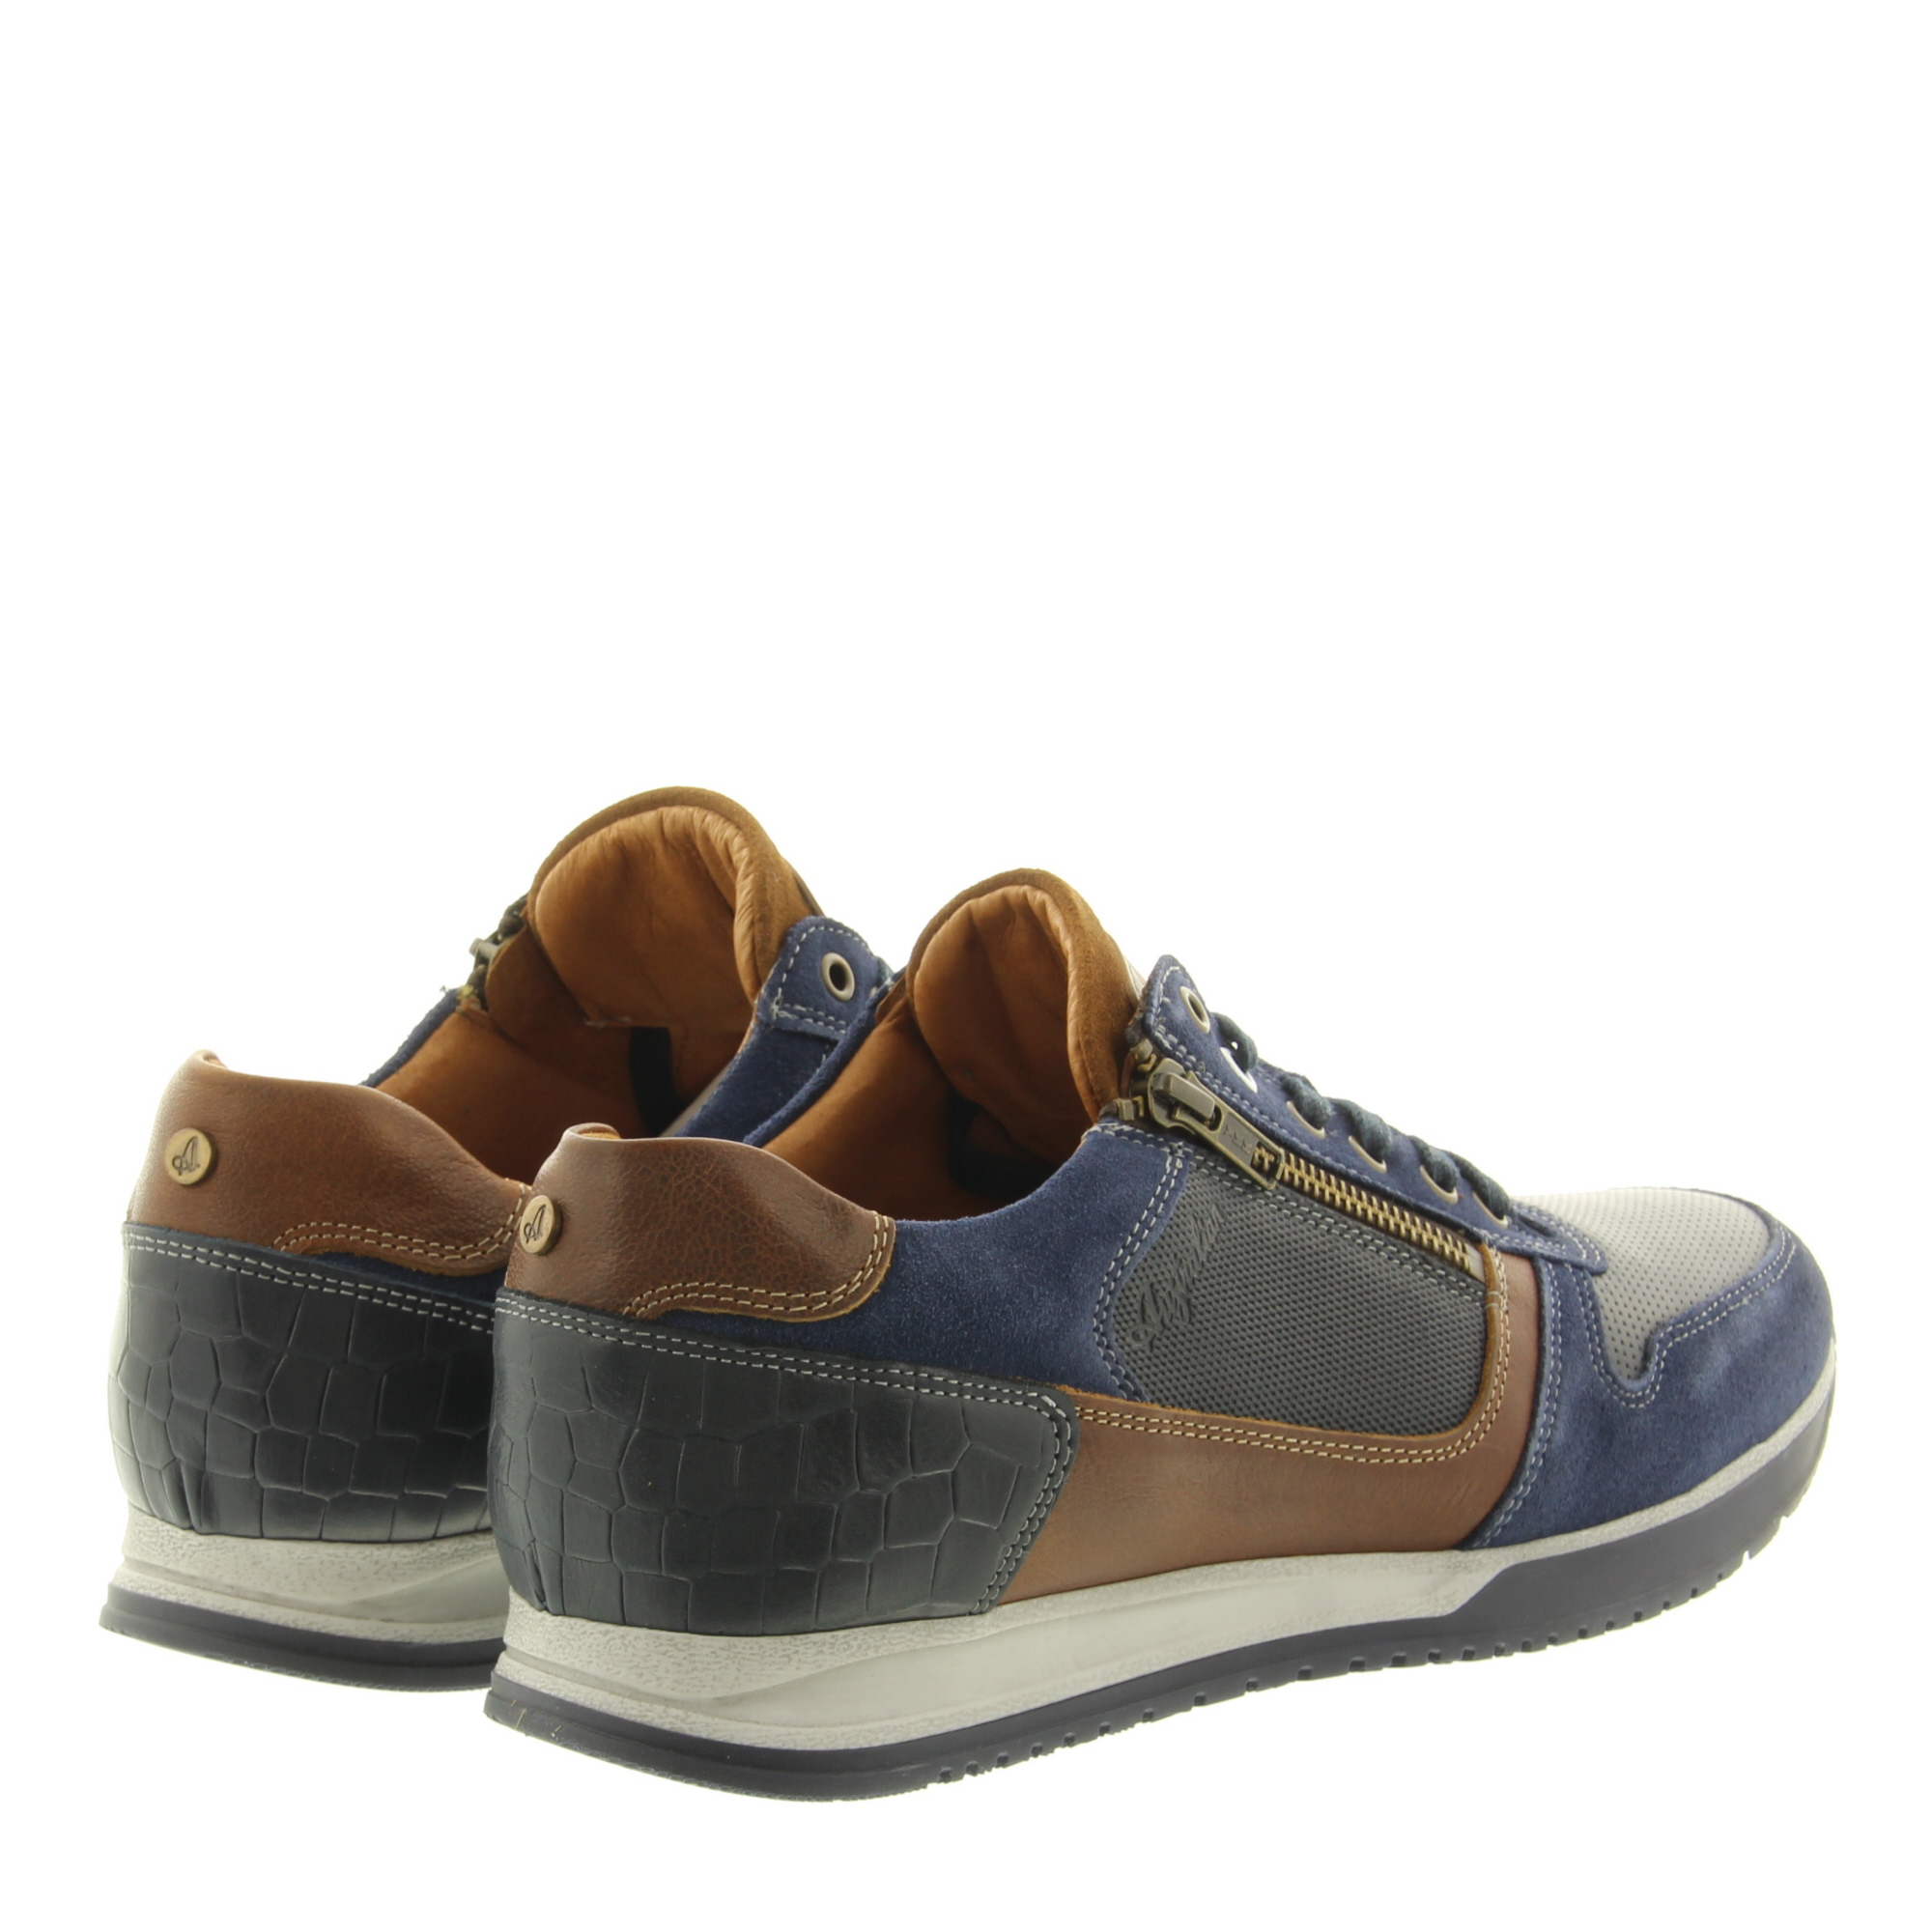 Australian Footwear Browning Width H 15.1508.02 SIP Ocean Blue Cognac